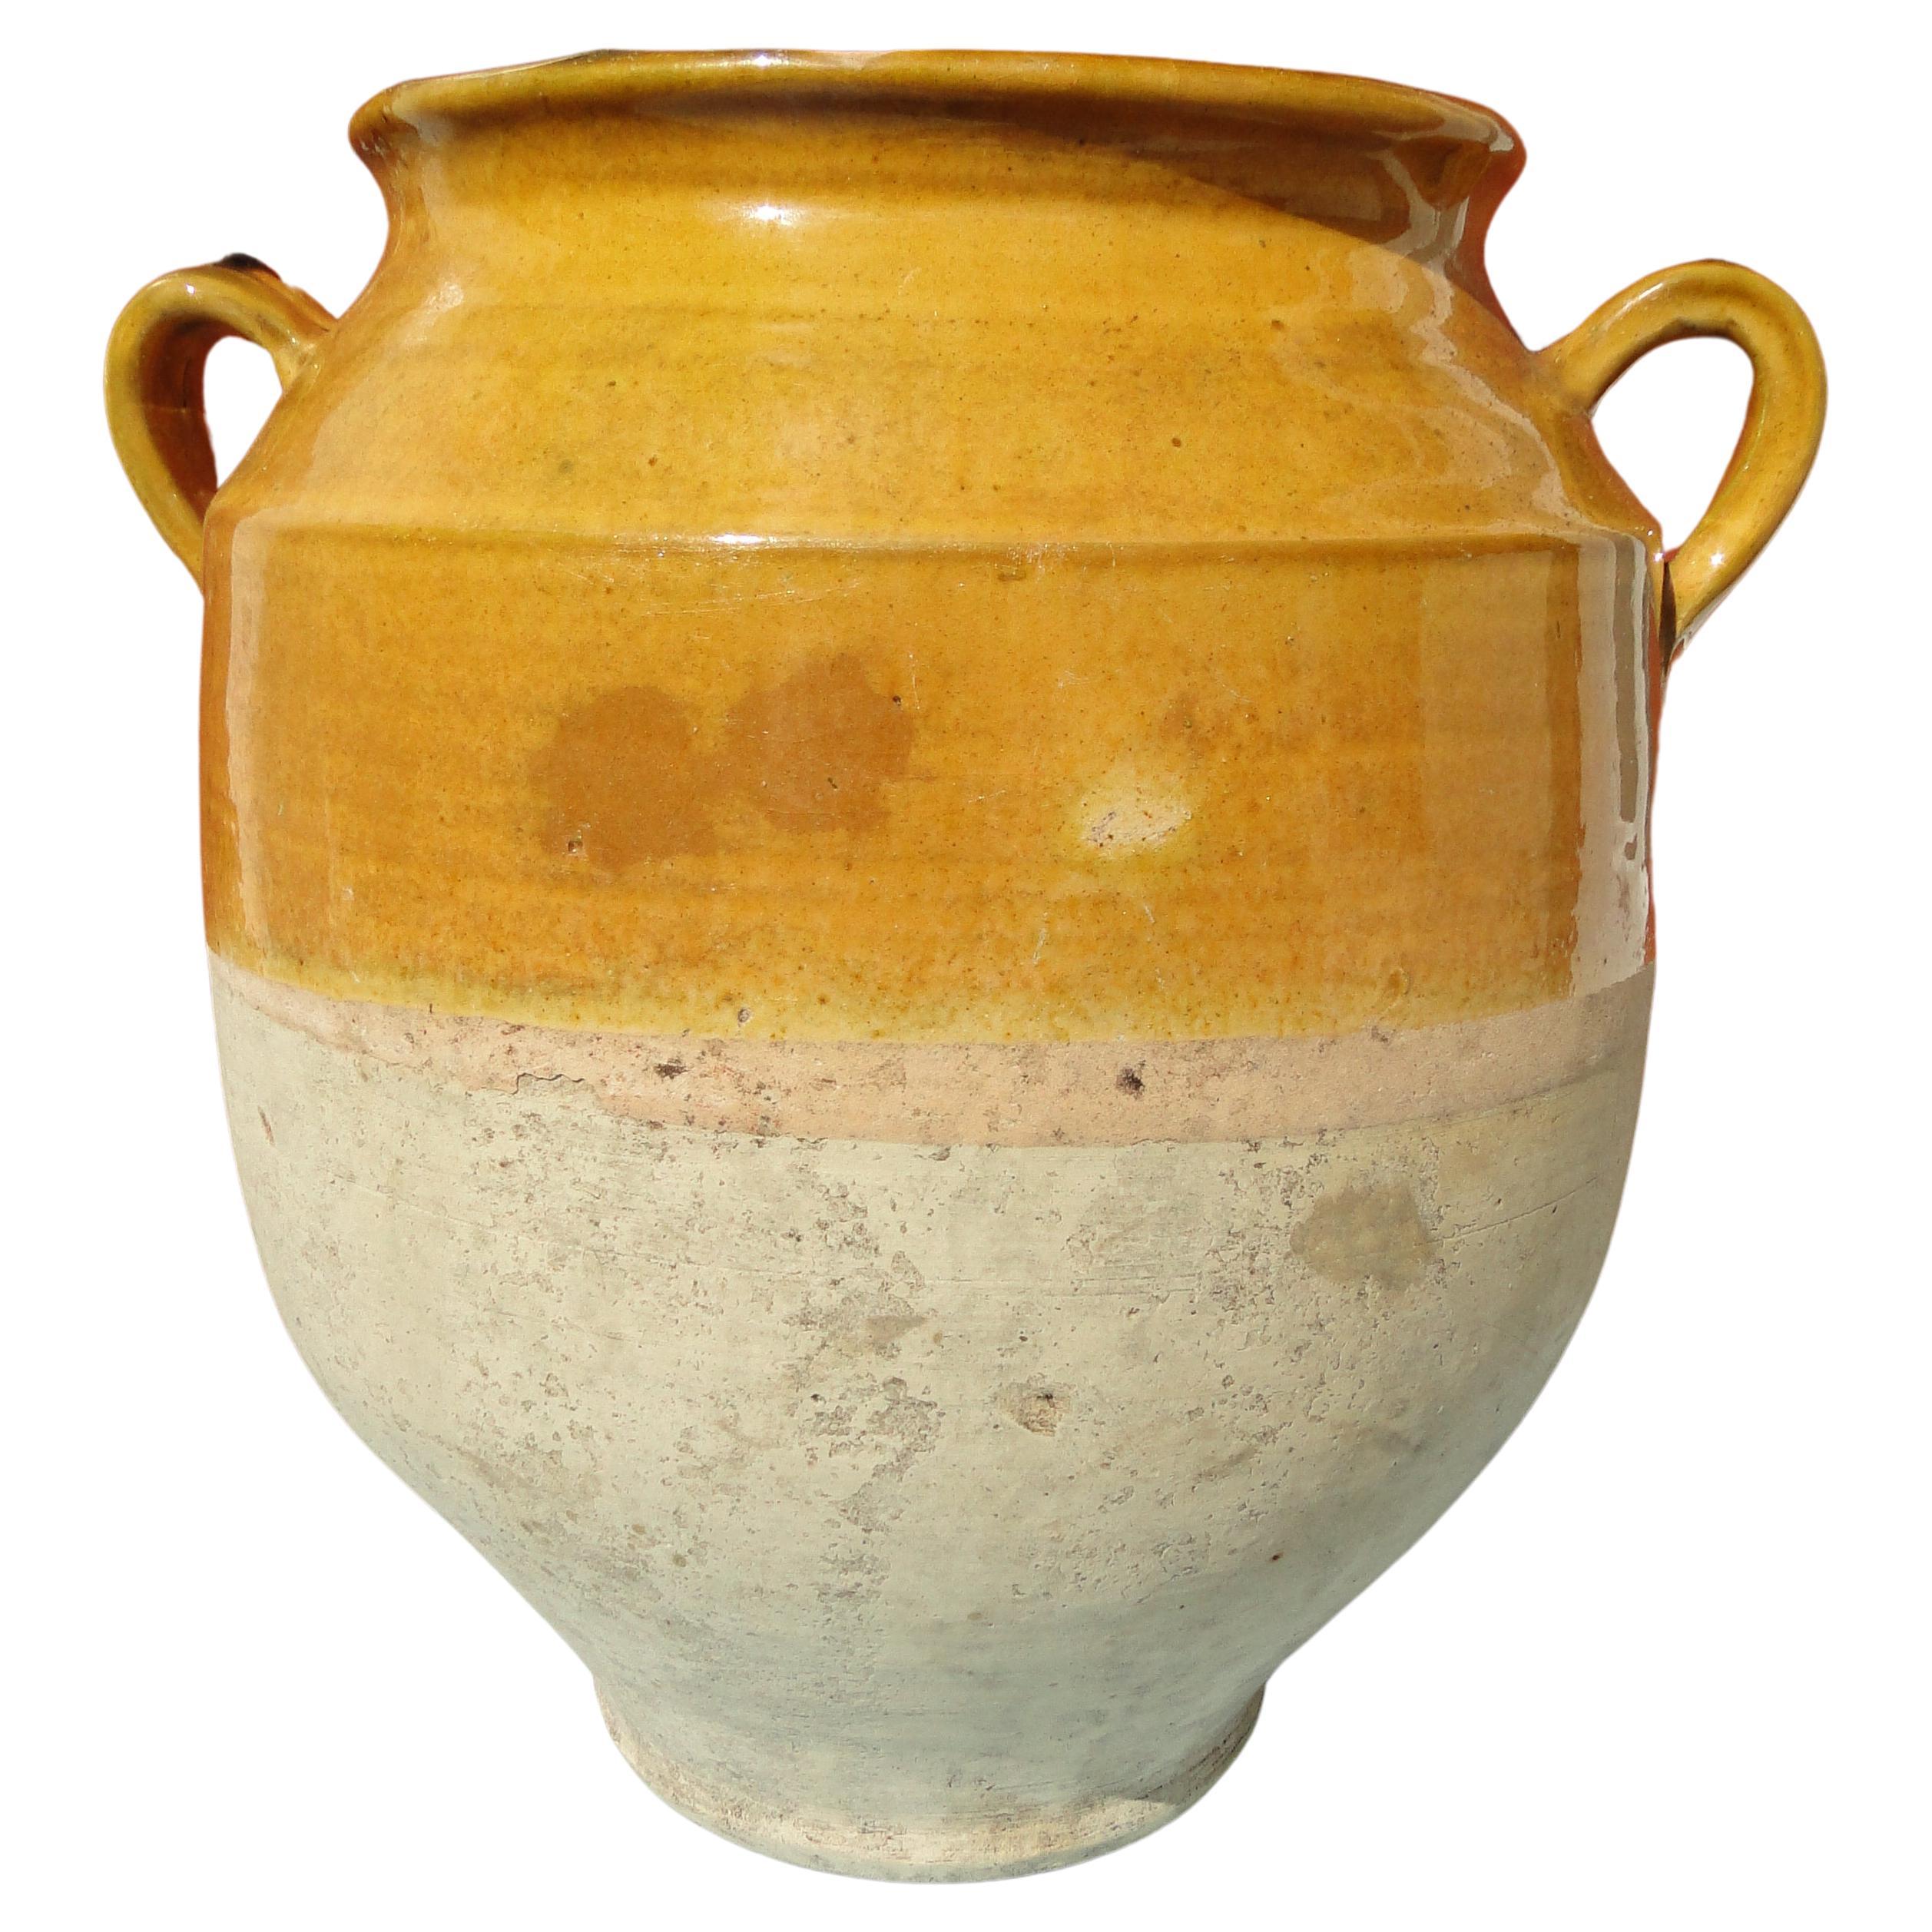  Pot d'art français ancien rouge confit, faïence jaune, poterie jaune, France